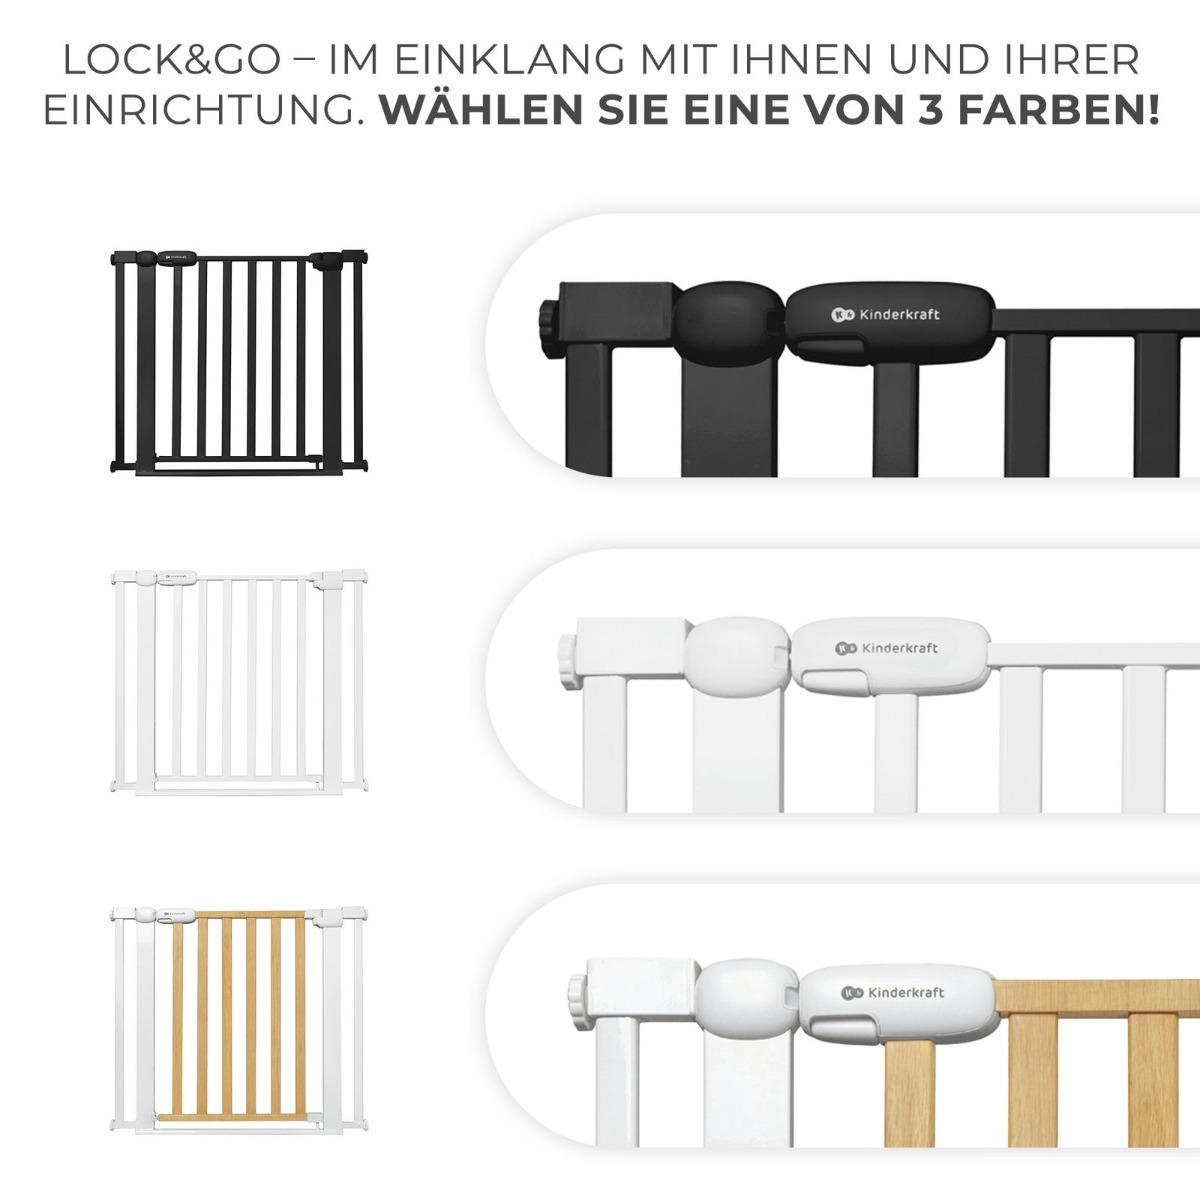 8DE-KK-lock-go-schwarz-wahlen-sie-eine-von-3-farben